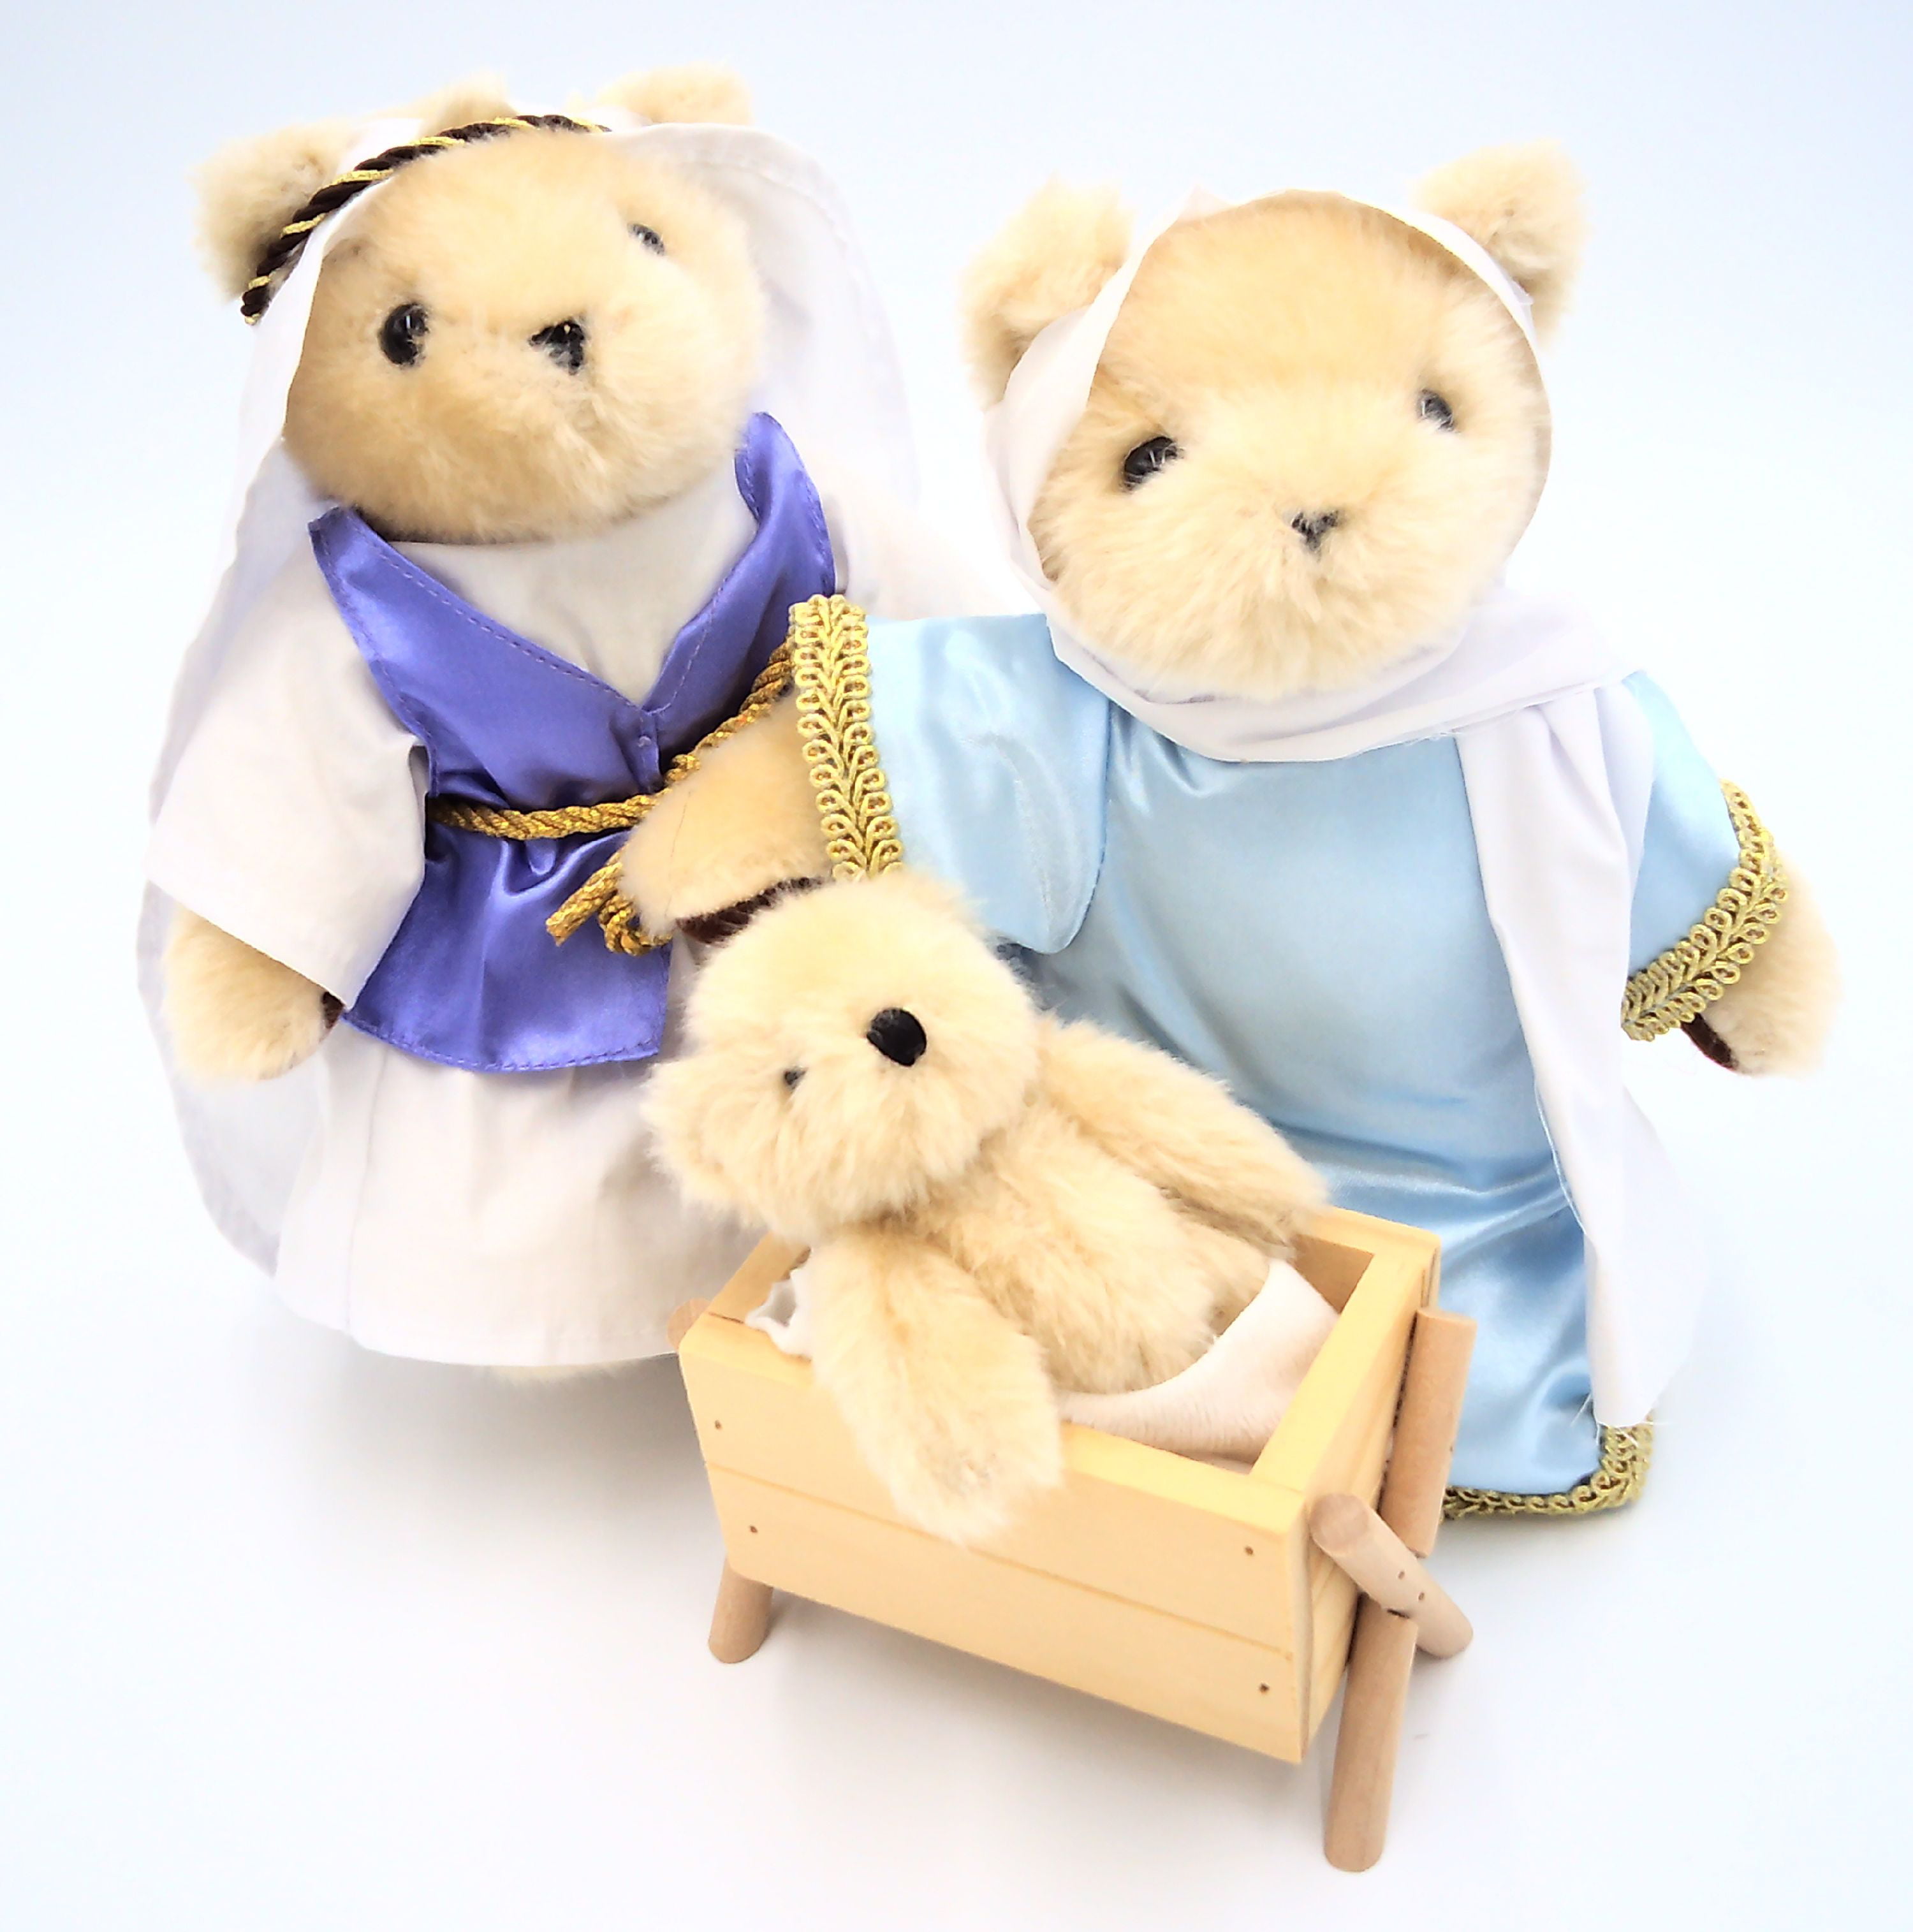 EDWARD Teddy Bear Cute And Cuddly Gift Present Birthday Xmas NEW 